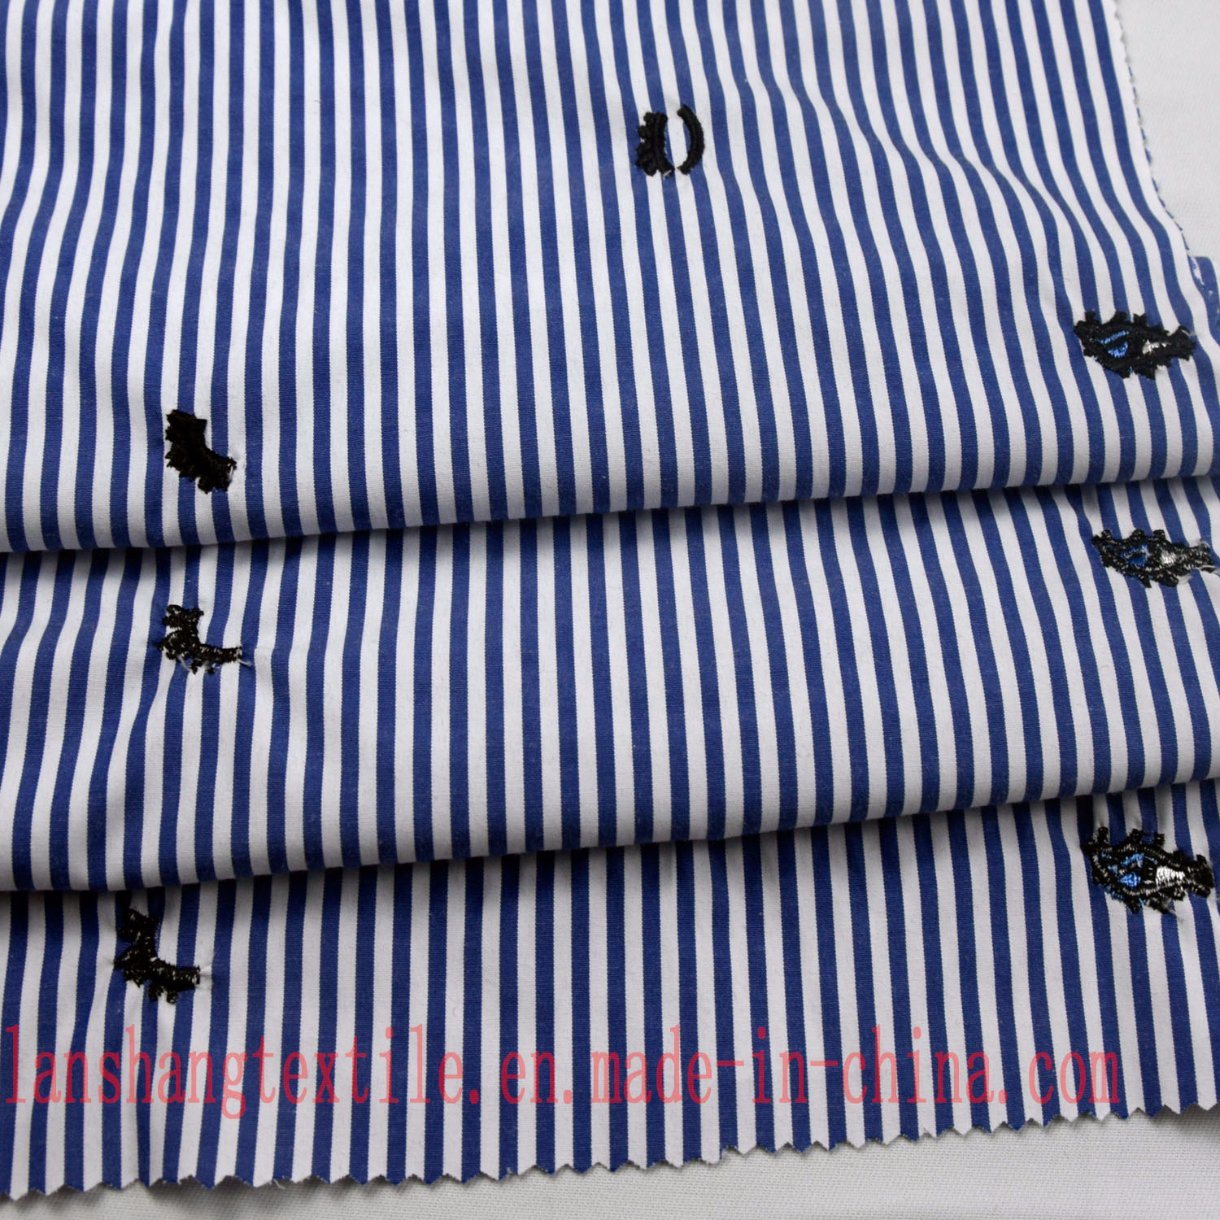 Embroider Yarn Dyed Fabric for Dress Shirt Skirt Chidlren Garment